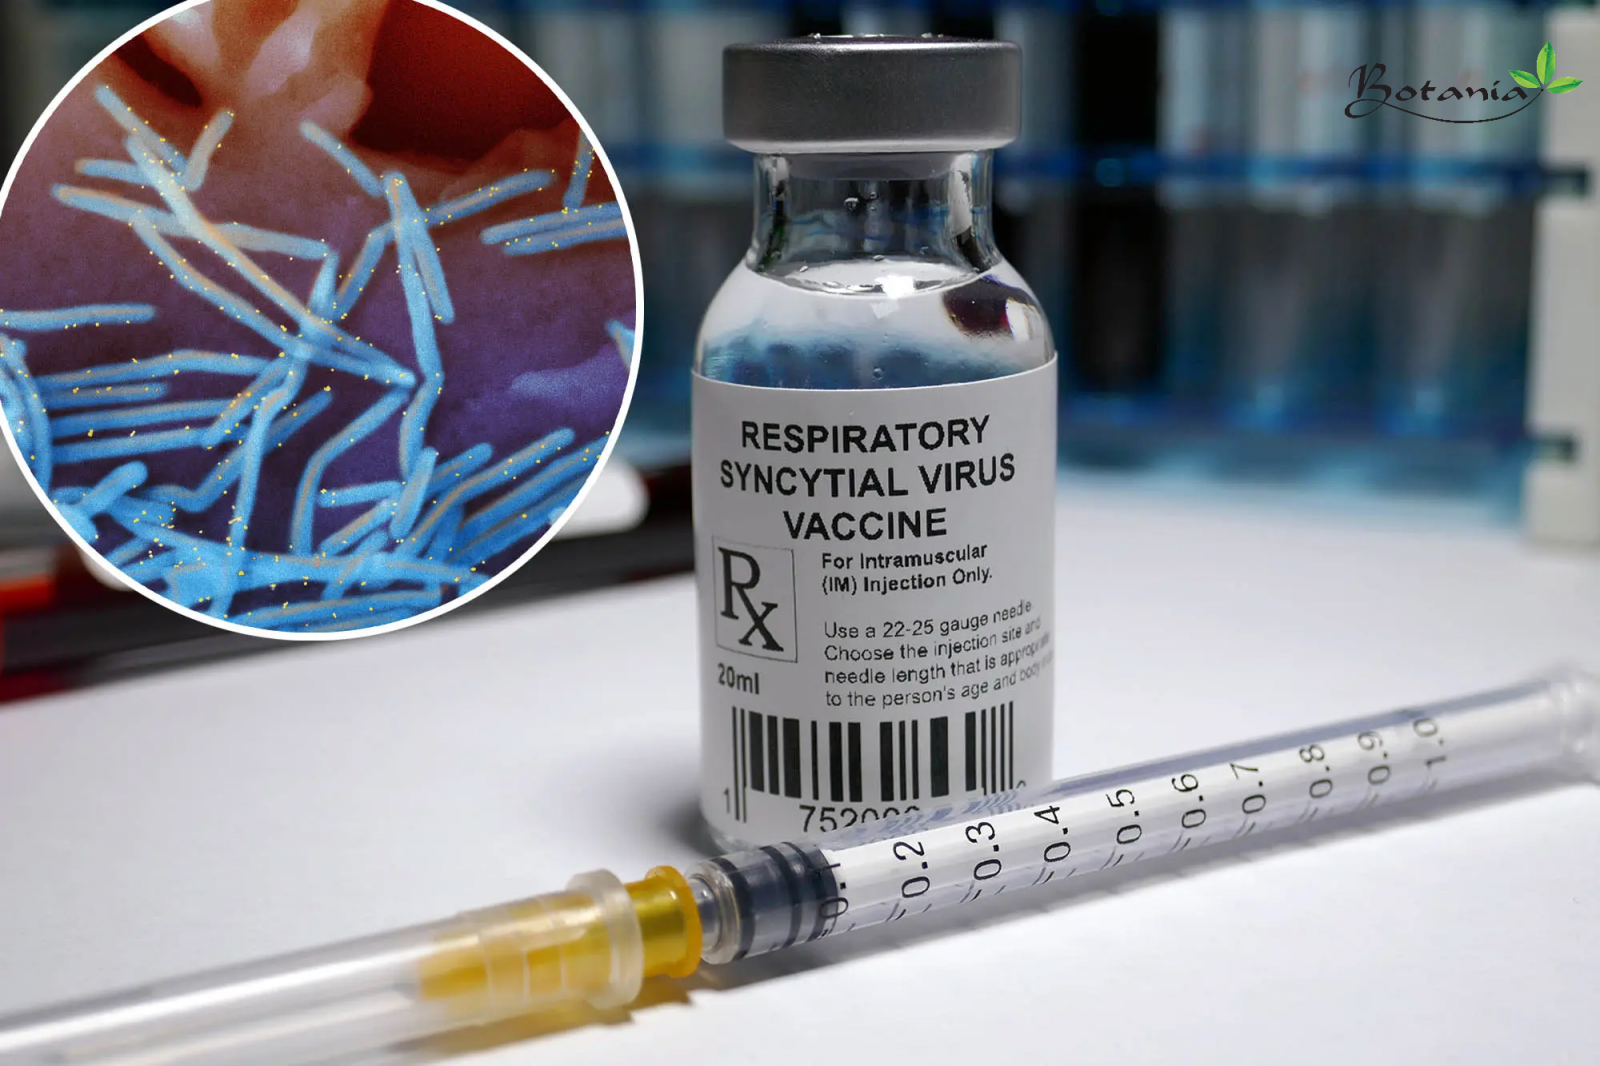 [Tin vui] FDA lần đầu chấp thuận vắc-xin RSV sau 60 năm nghiên cứu và sản xuất